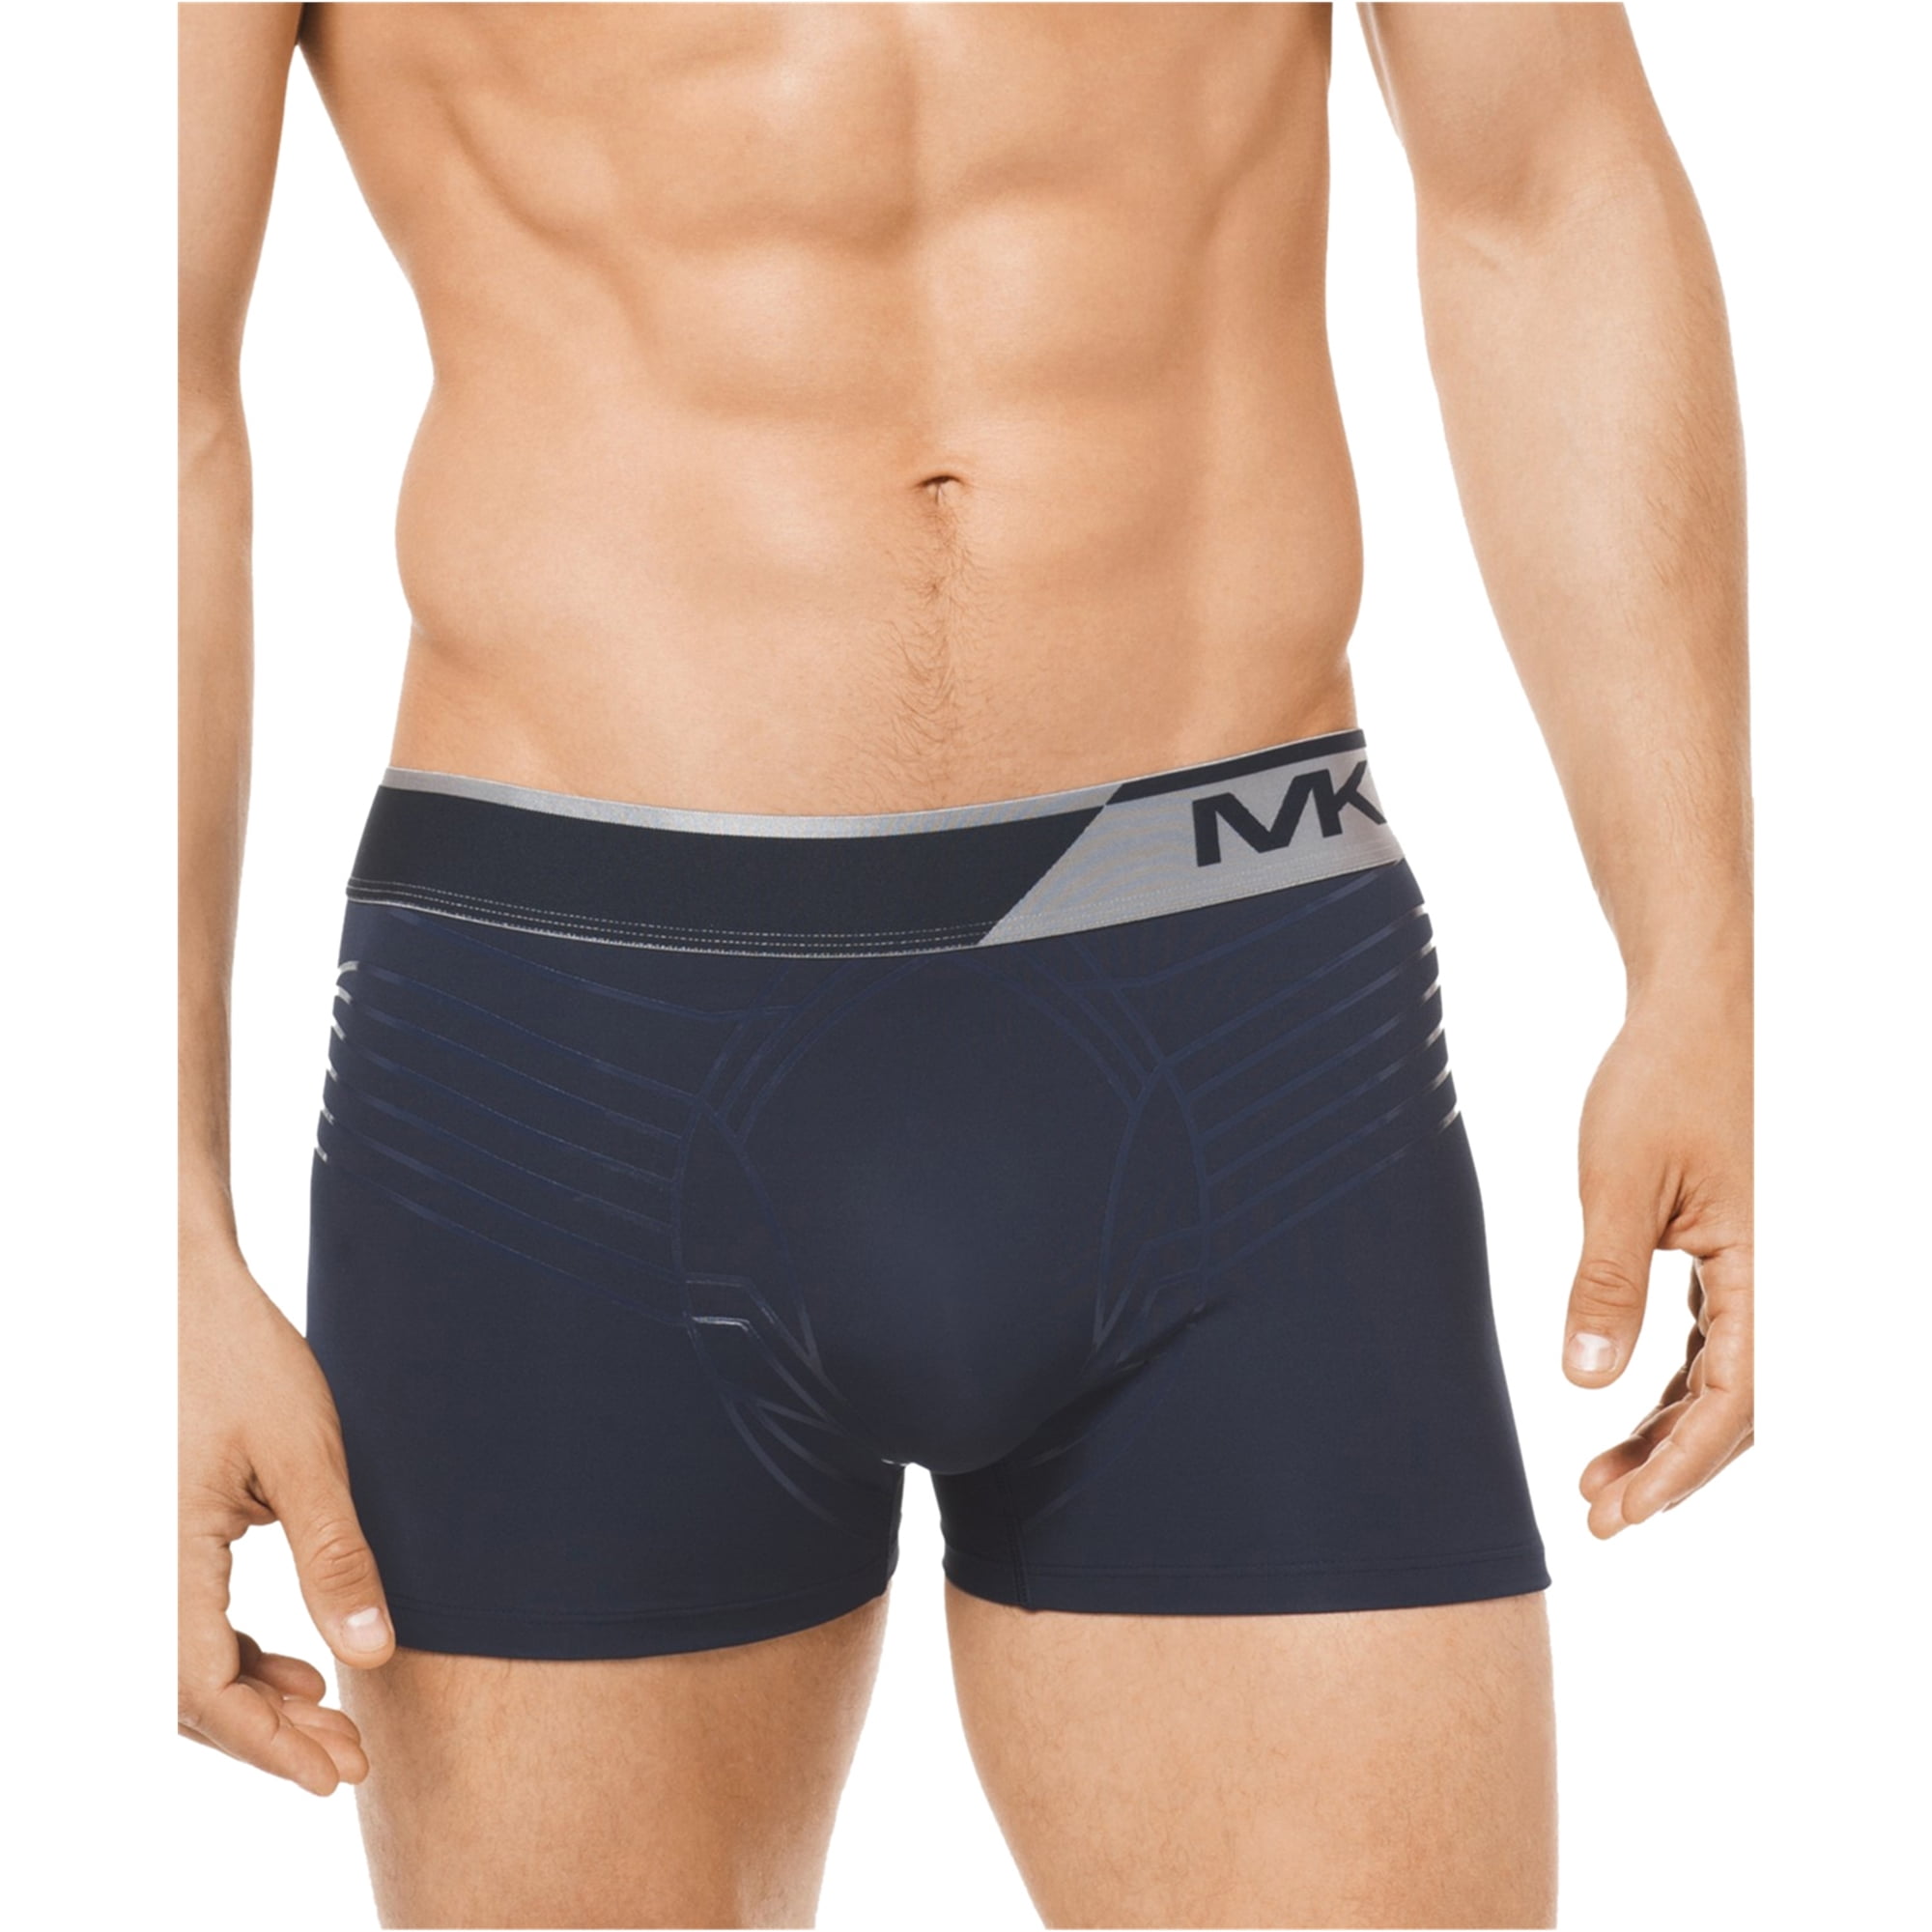 mk underwear